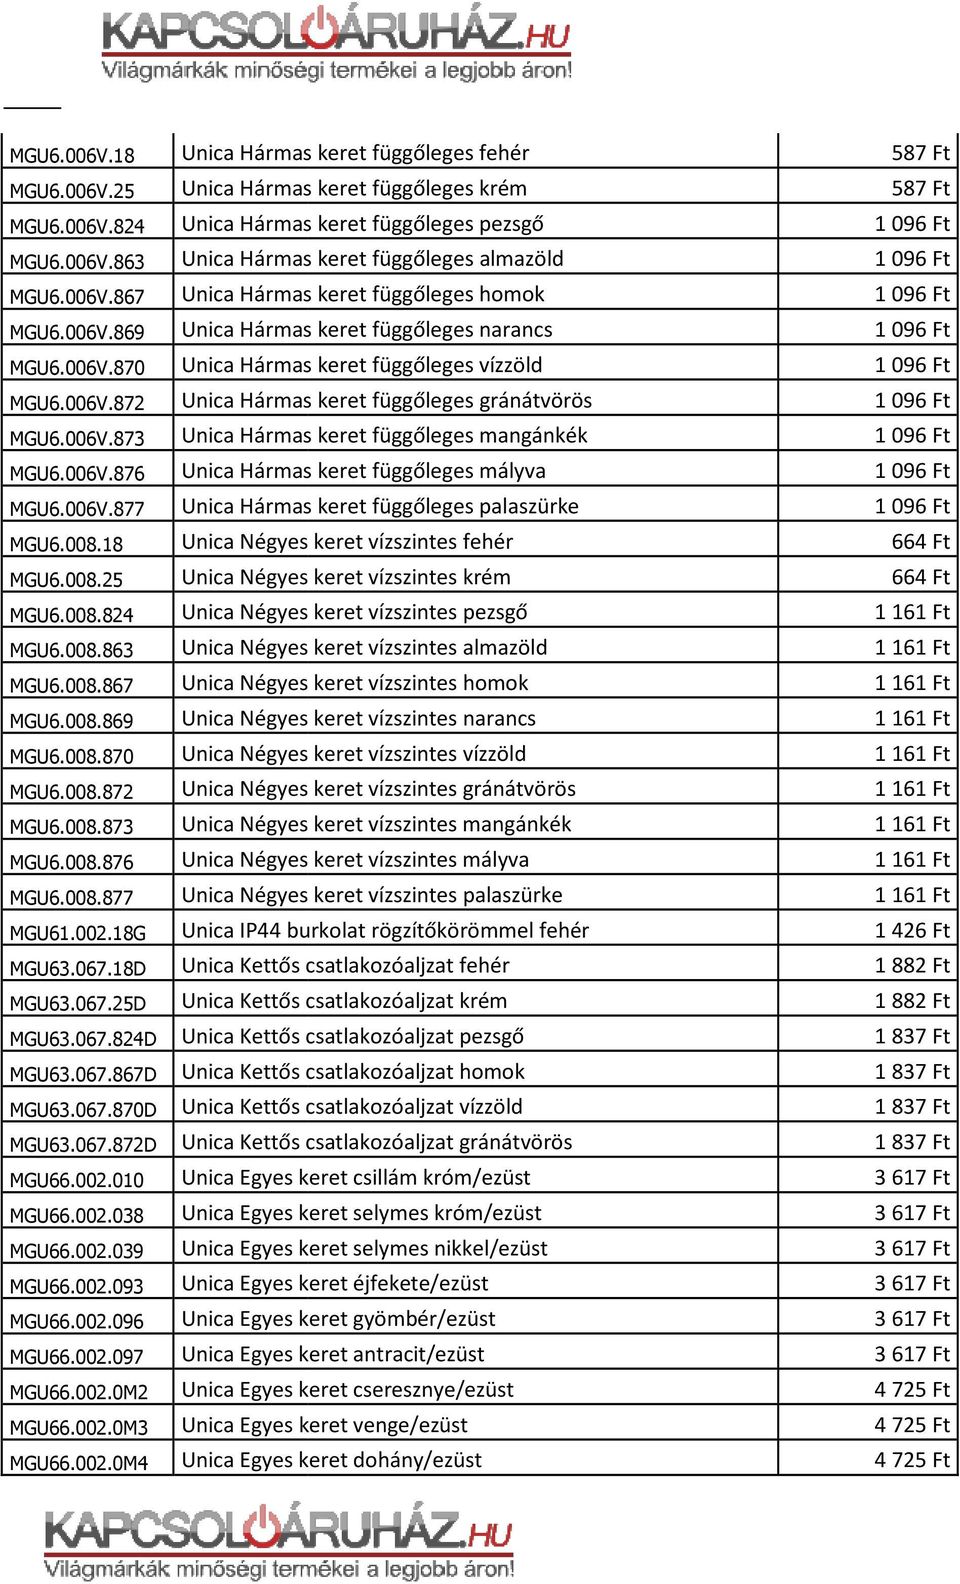 006V.873 Unica Hármas keret függőleges mangánkék MGU6.006V.876 Unica Hármas keret függőleges mályva MGU6.006V.877 Unica Hármas keret függőleges palaszürke MGU6.008.